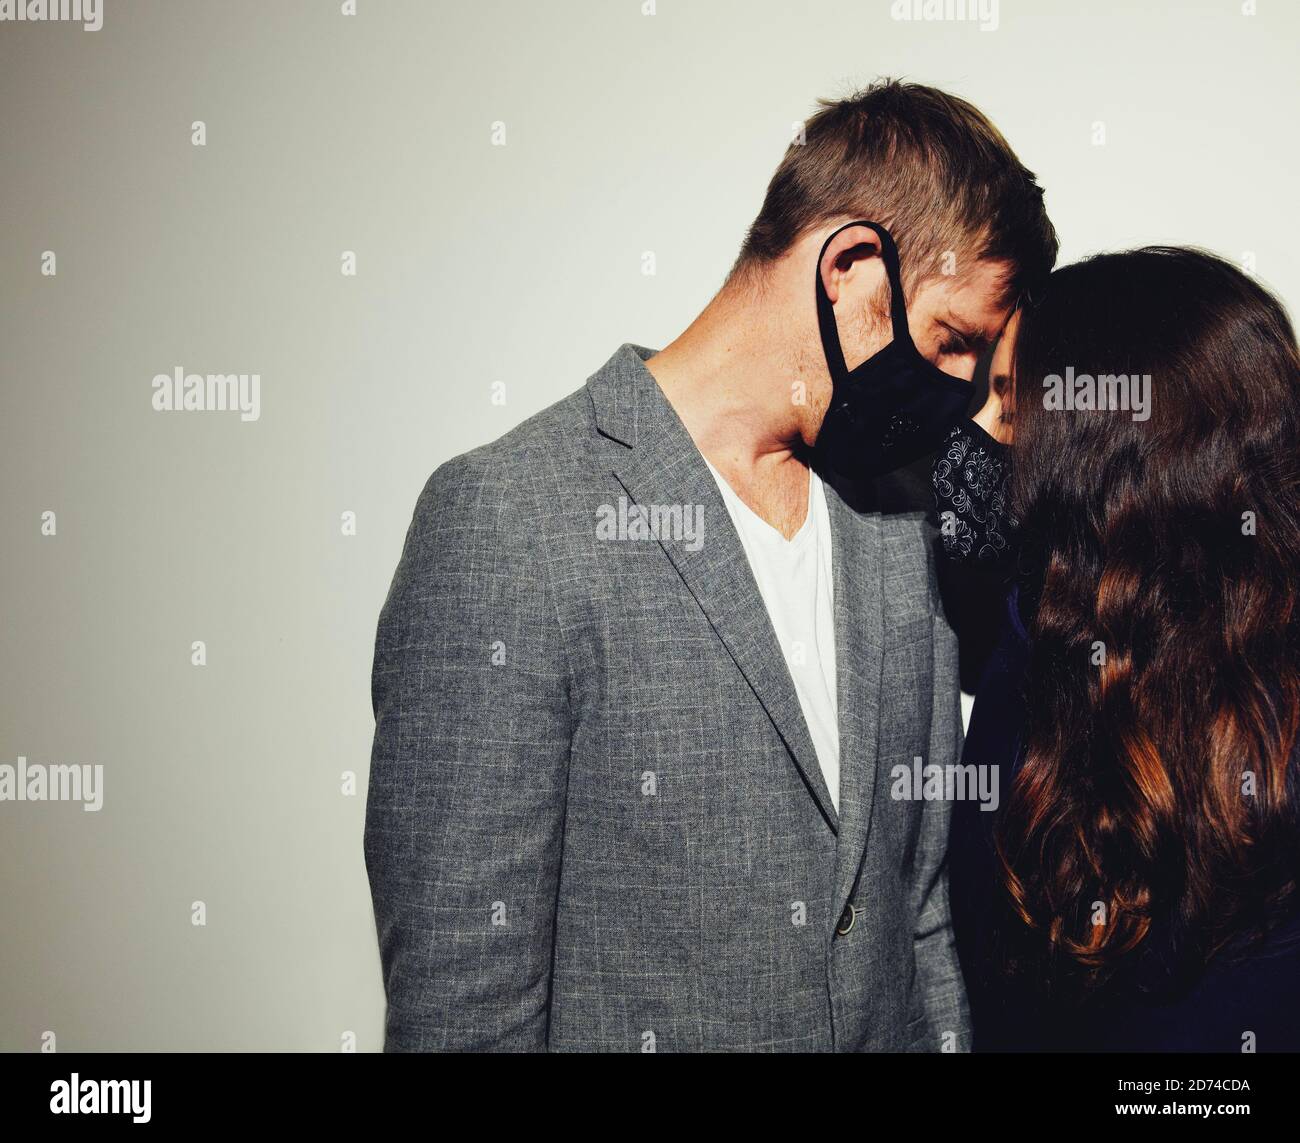 Schönes junges Paar in der Liebe, trägt modische Schutzmasken für Pandemie. Horizontale Komposition, Kopierbereich, weißer Hintergrund. Stockfoto